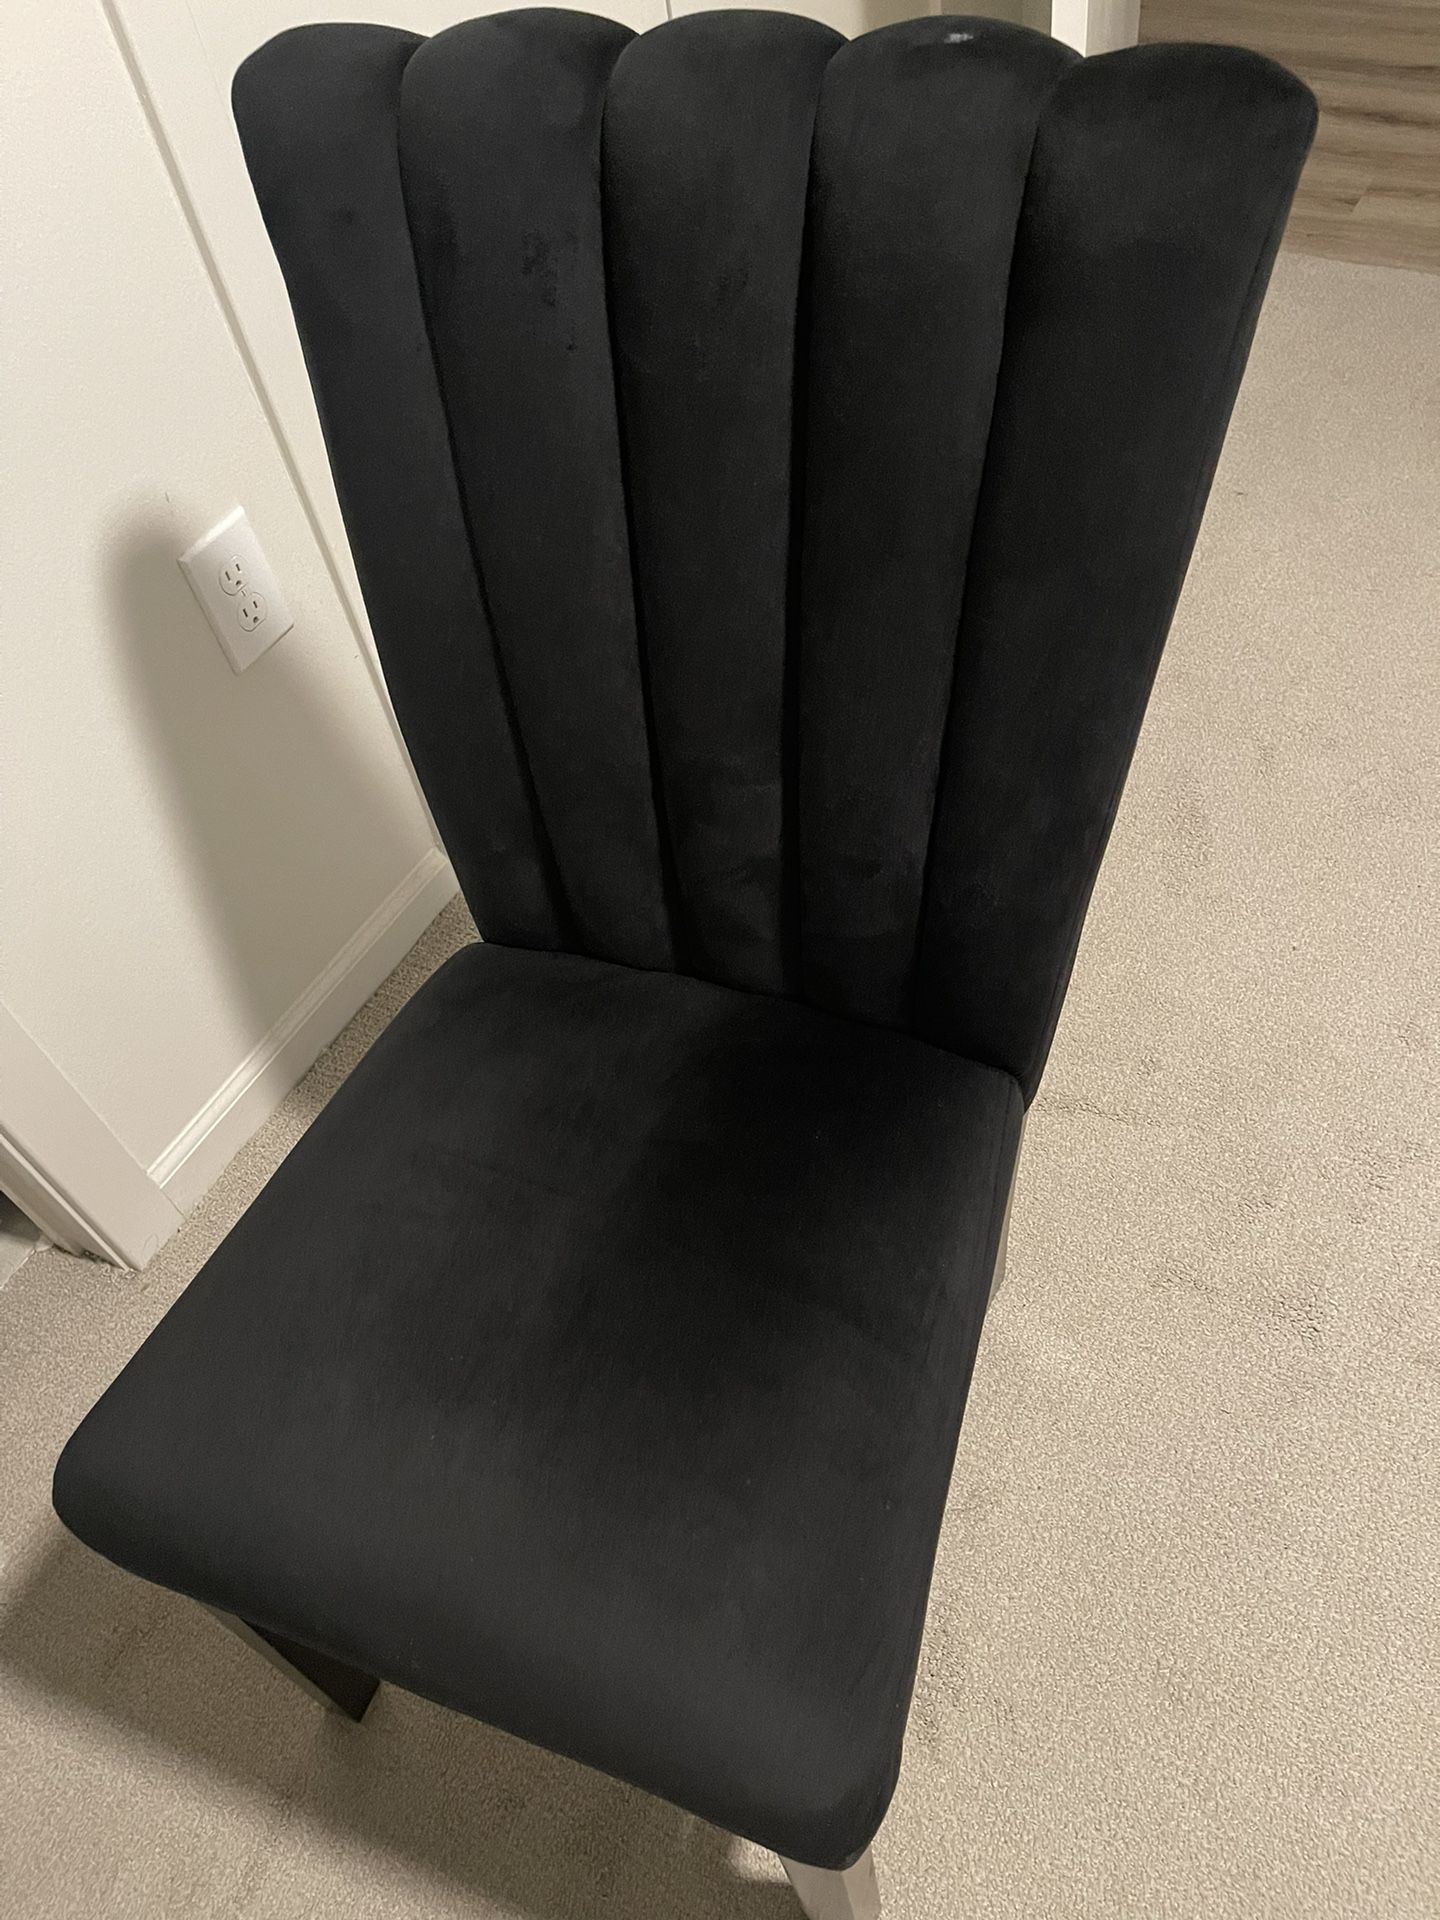 Soft Black Chair